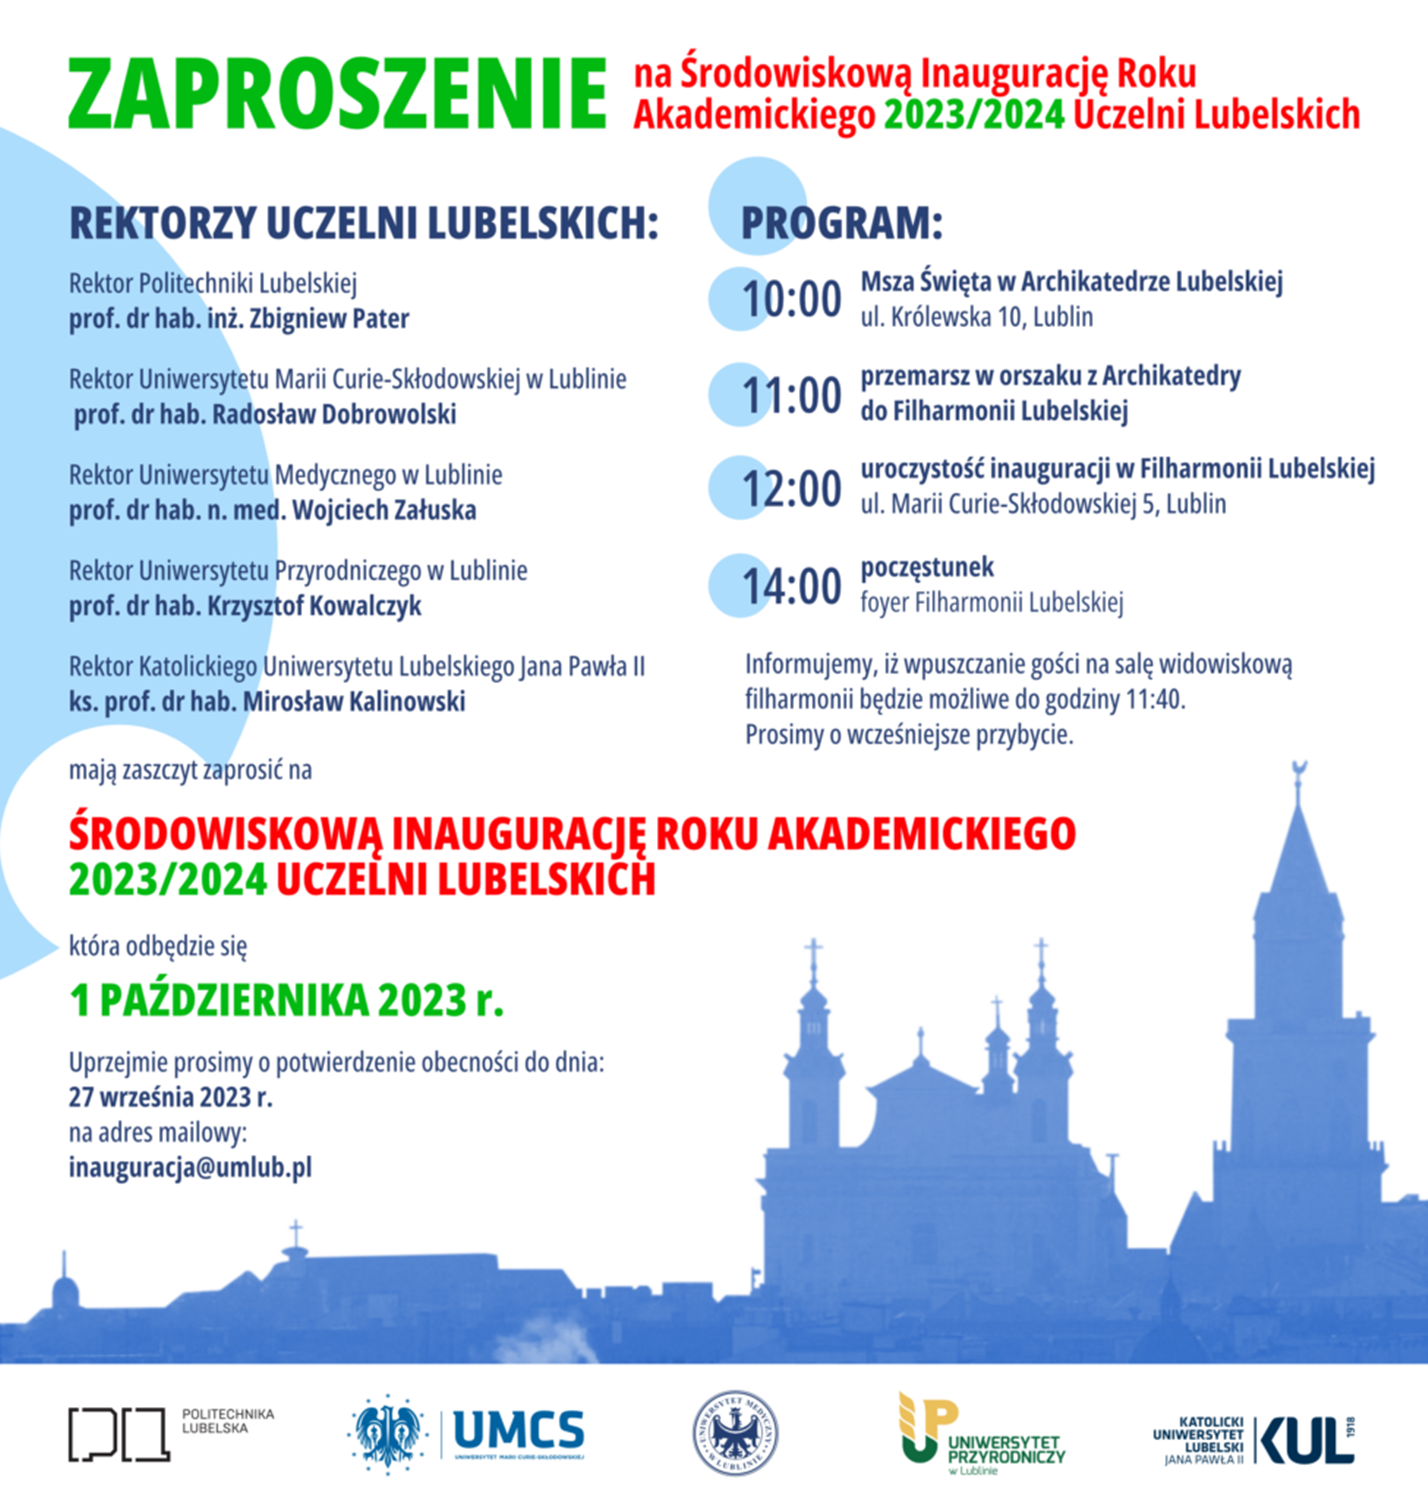 plakat środowiskowej inauguracji roku akademickiego uczelni lubelskich 2023/24